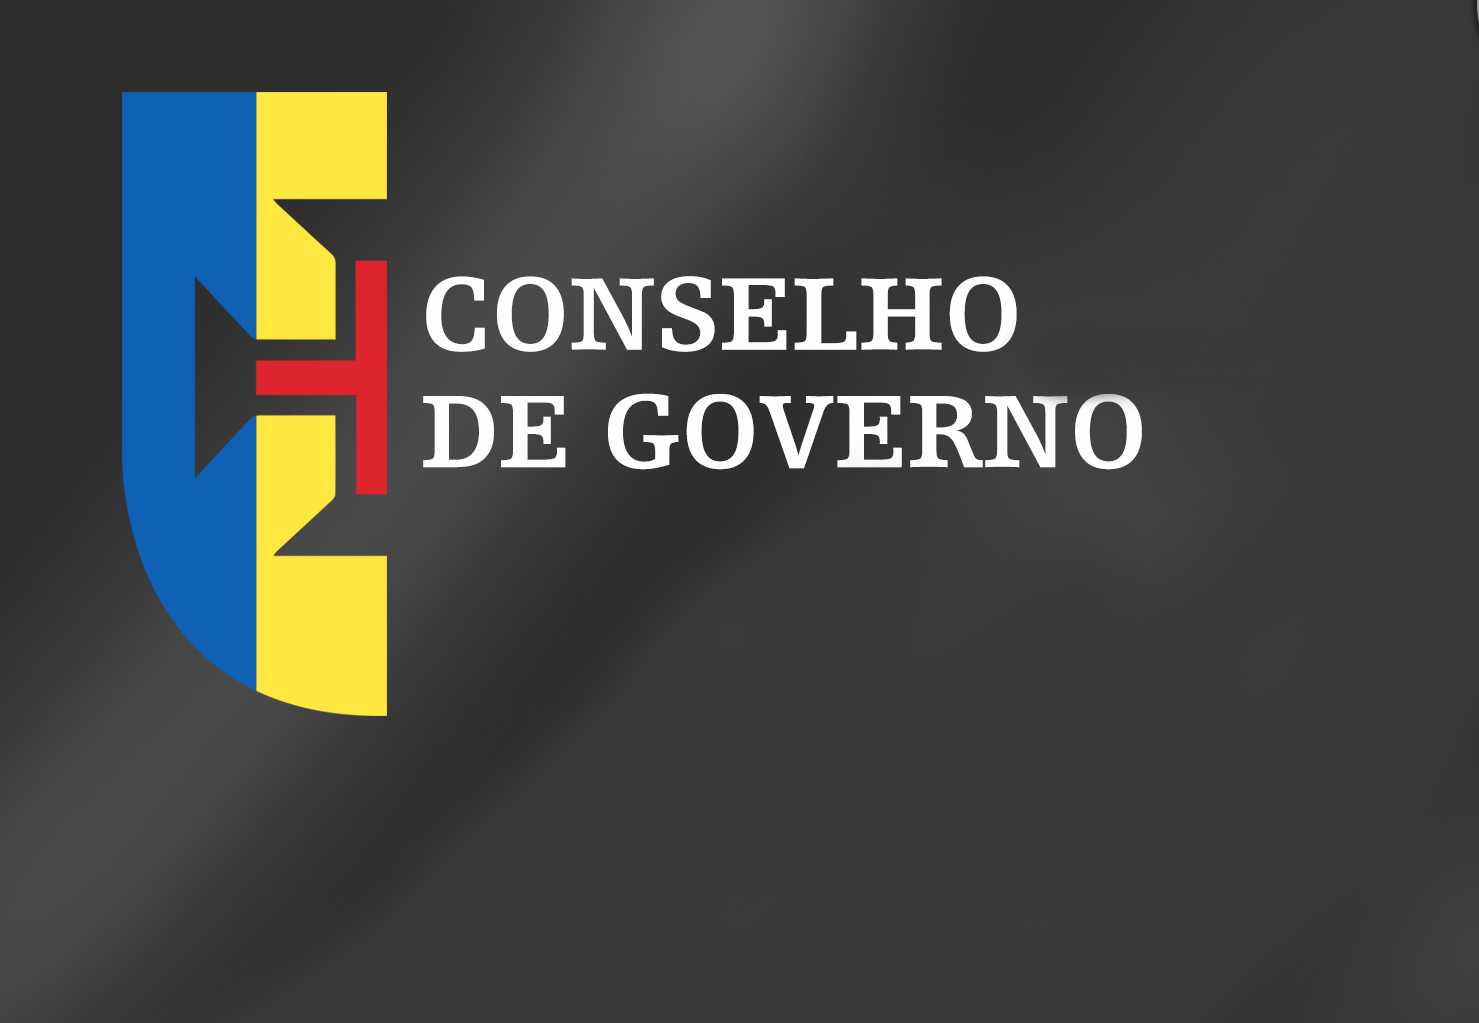 Conclusões Conselho de Governo - 14 de novembro de 2019